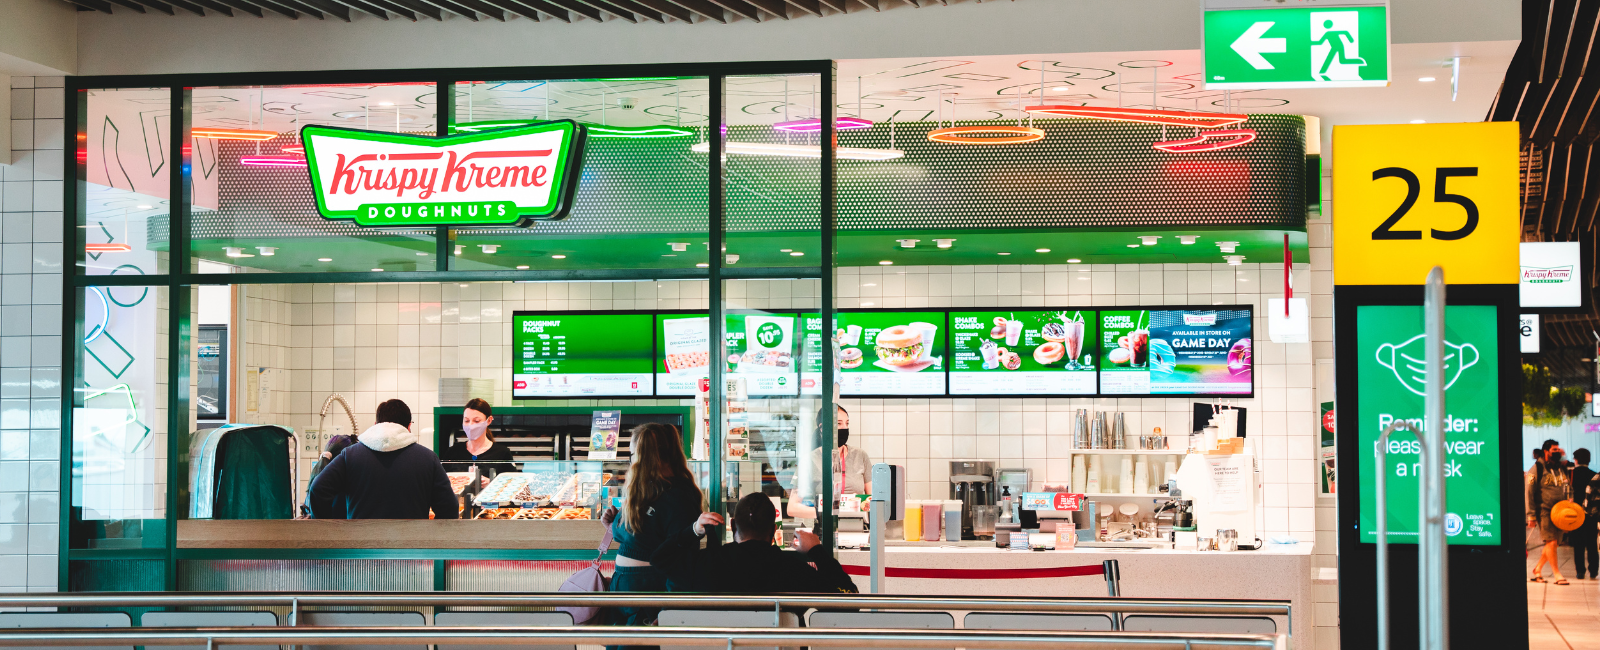 Krispy Kreme in the Domestic Terminal